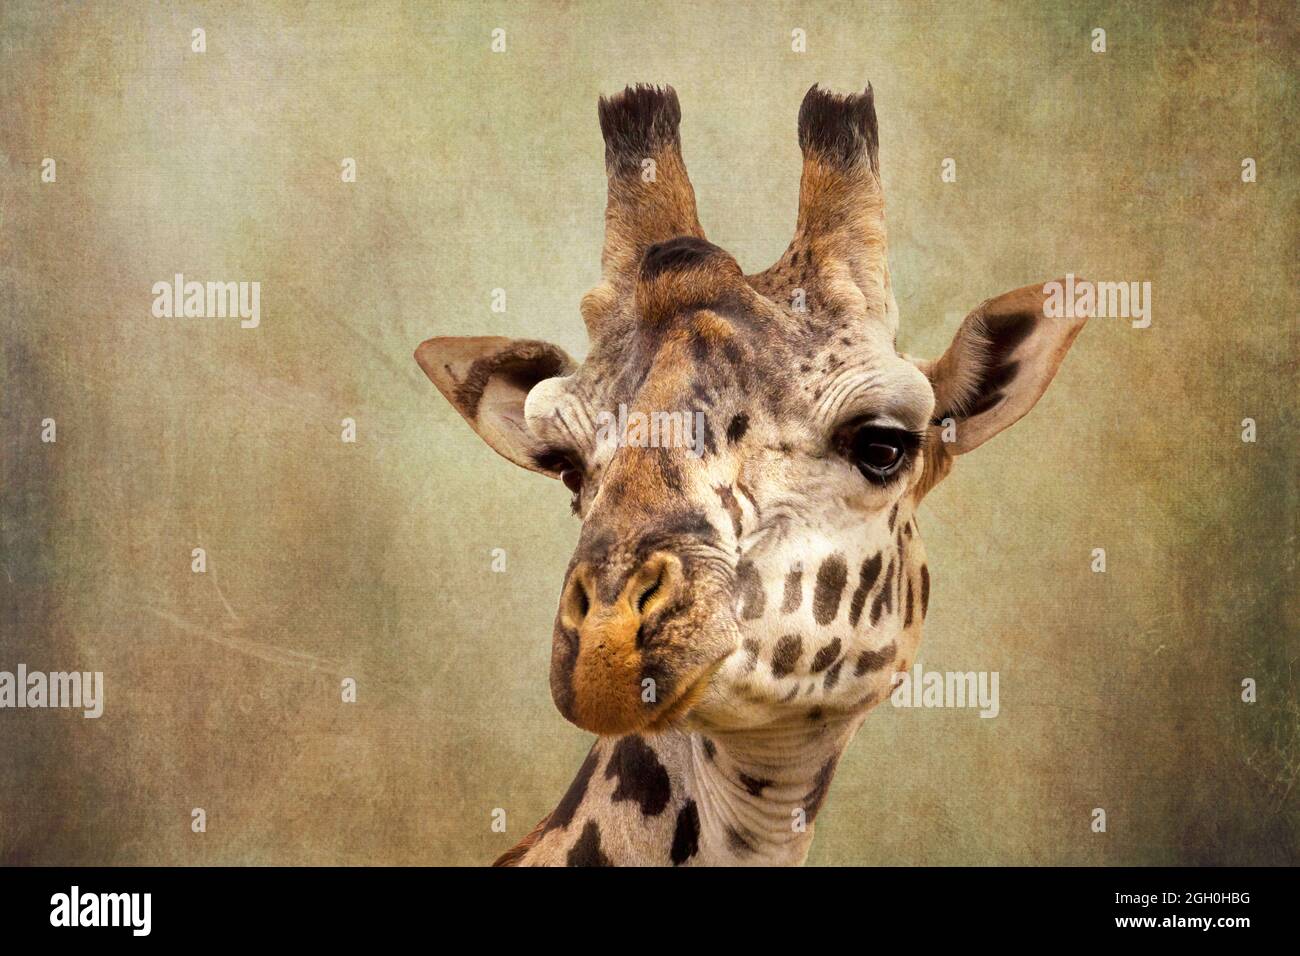 Gros plan sur la tête d'une girafe. L'image a été texturée pour reproduire une ancienne impression ou peinture. Espace pour votre texte. Banque D'Images